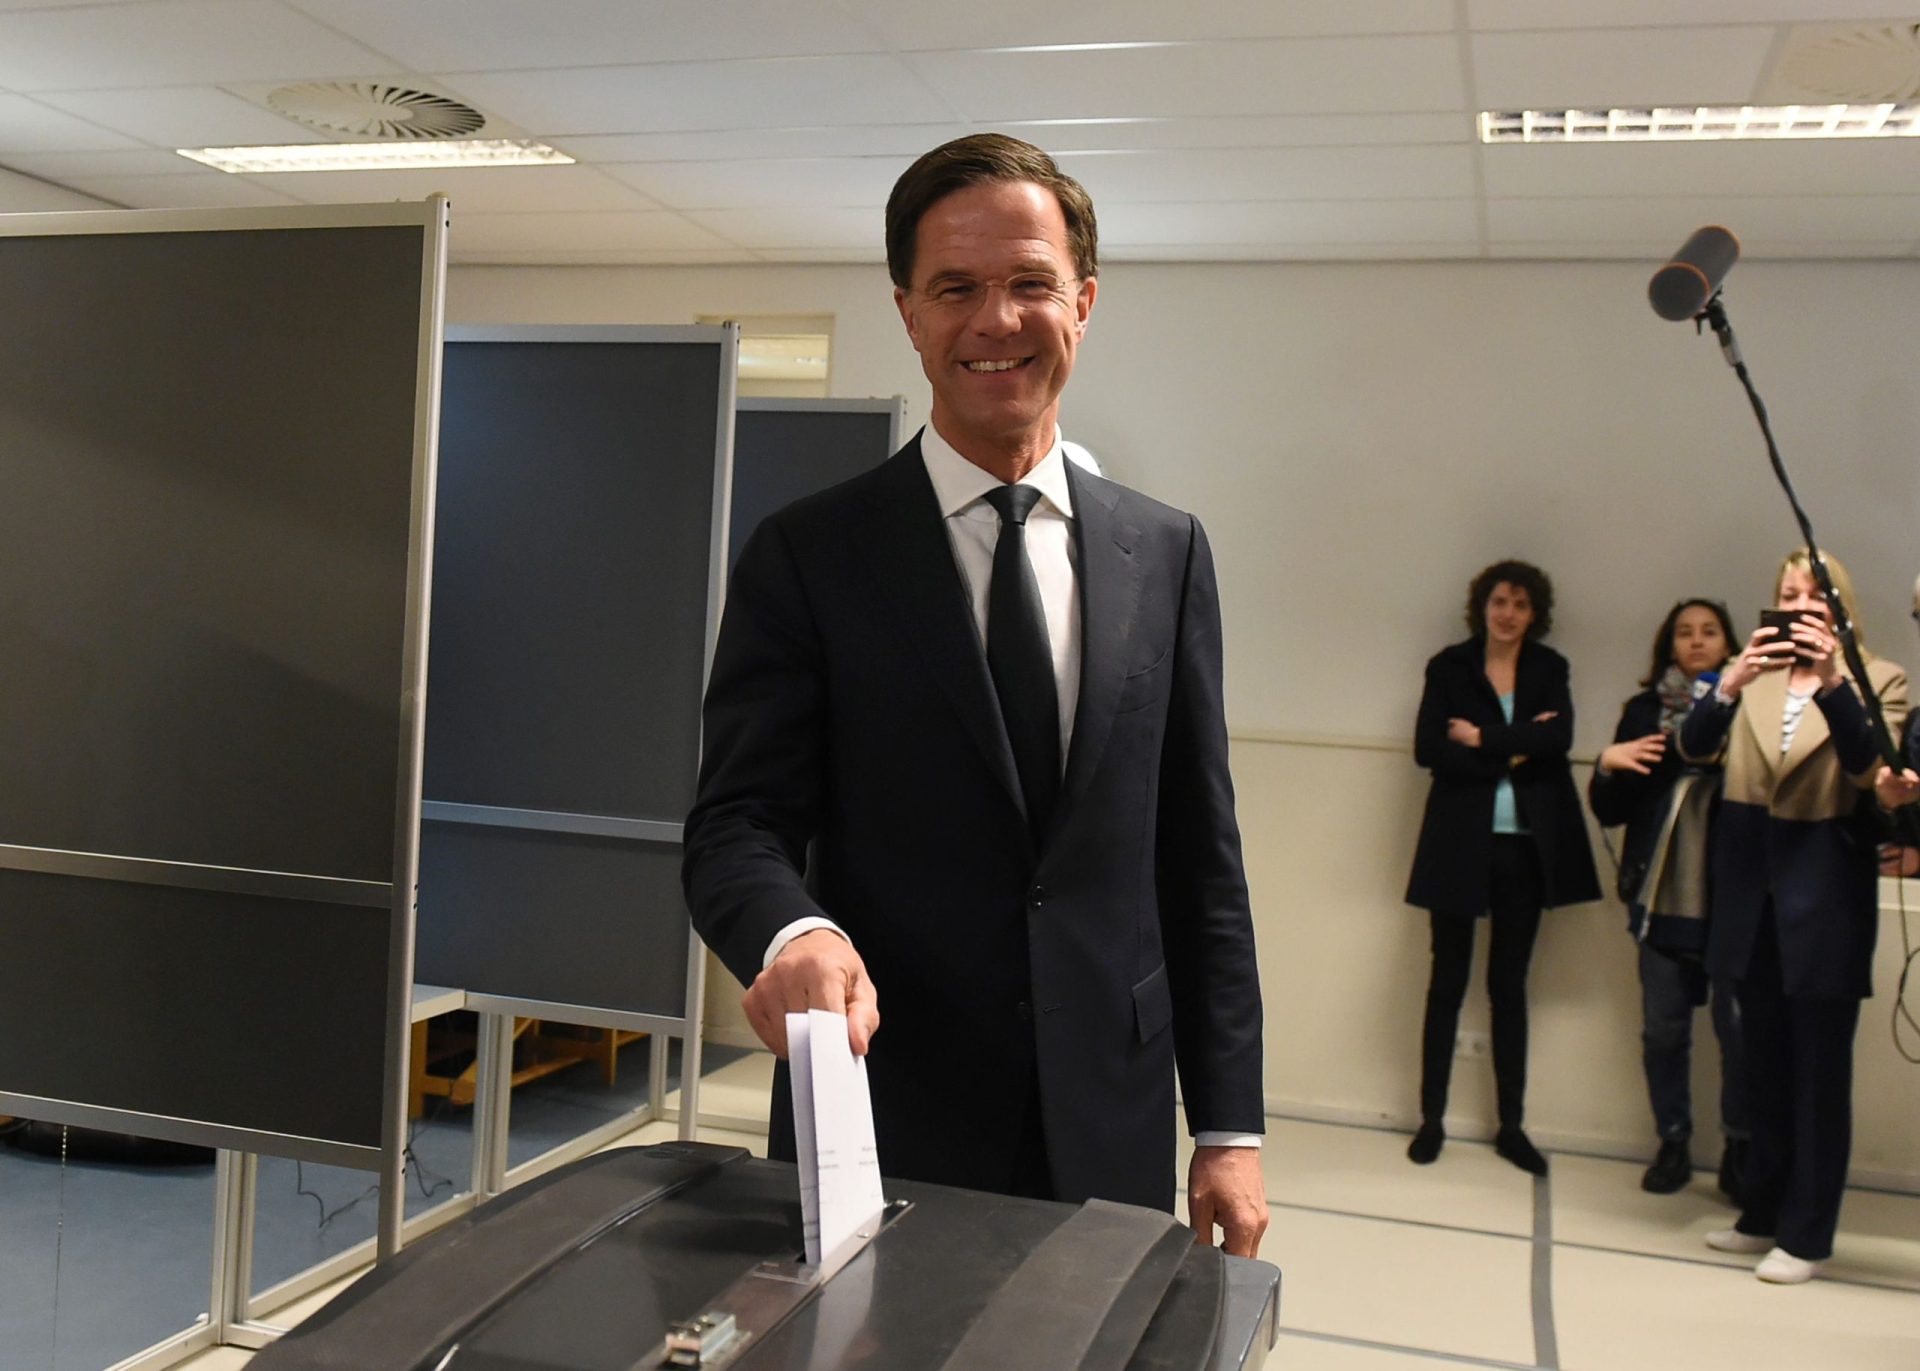 Holanda. Projeções dão vitória ao primeiro-ministro Mark Rutte